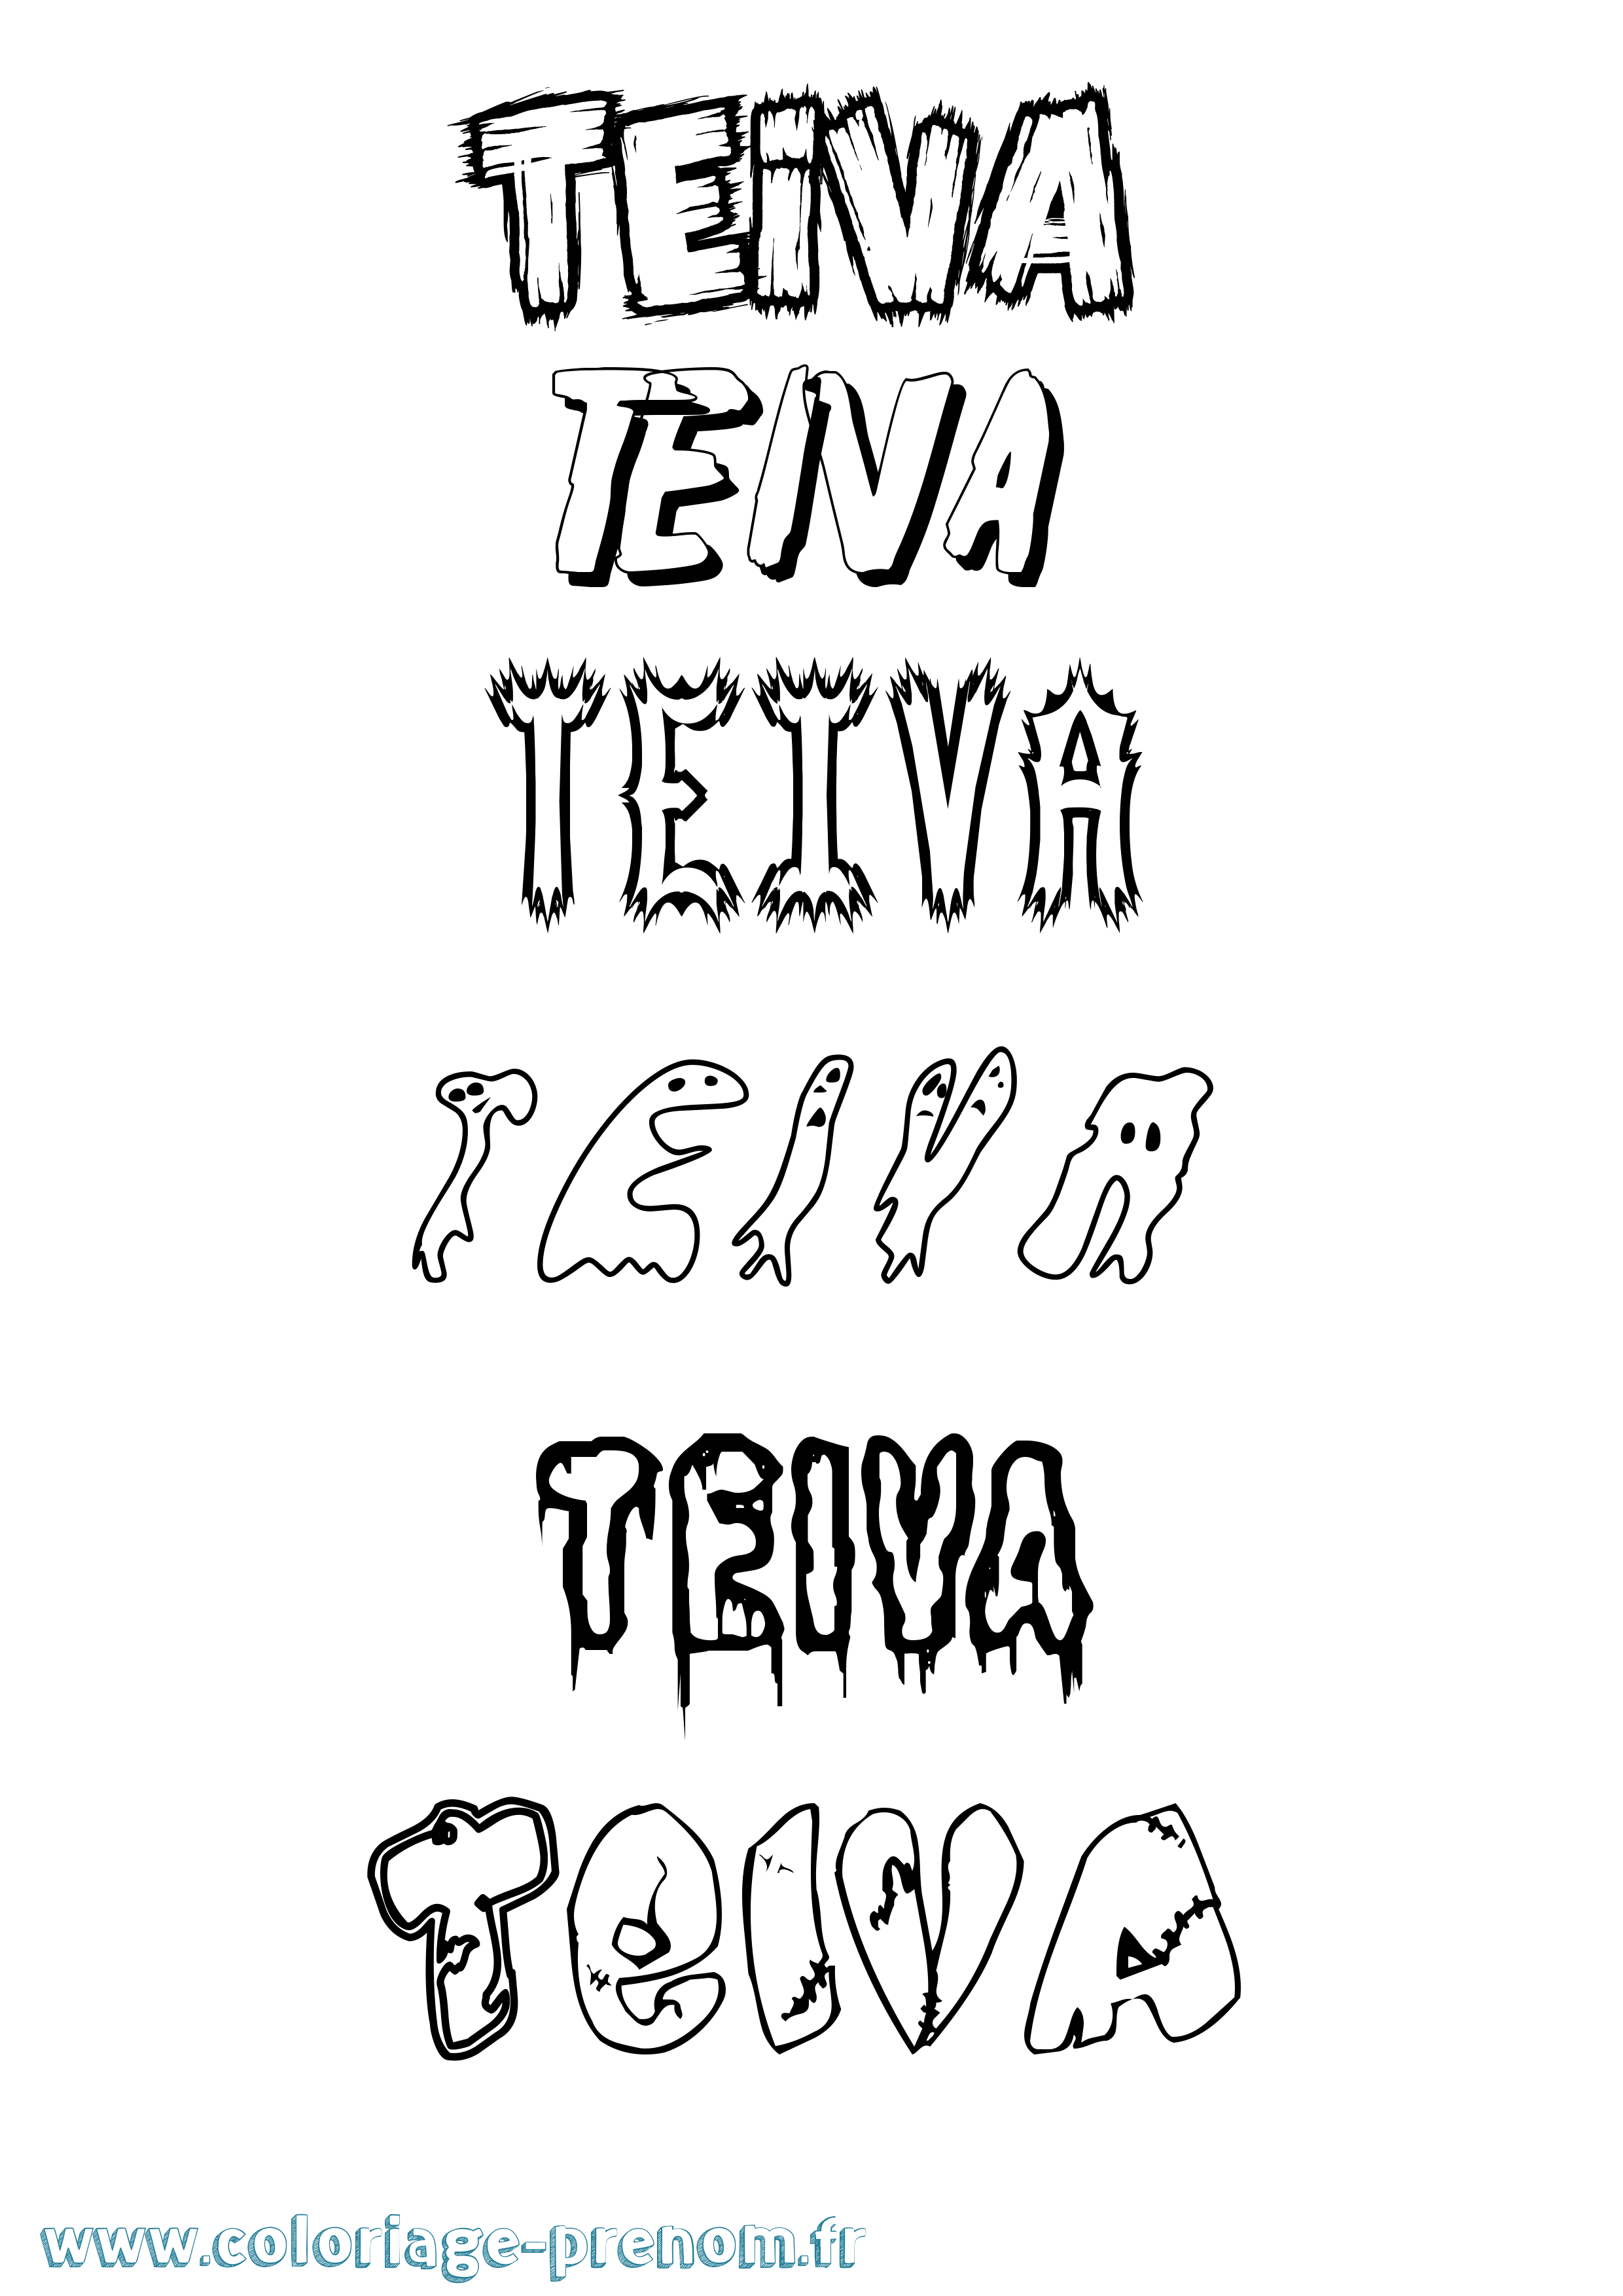 Coloriage prénom Teiva Frisson